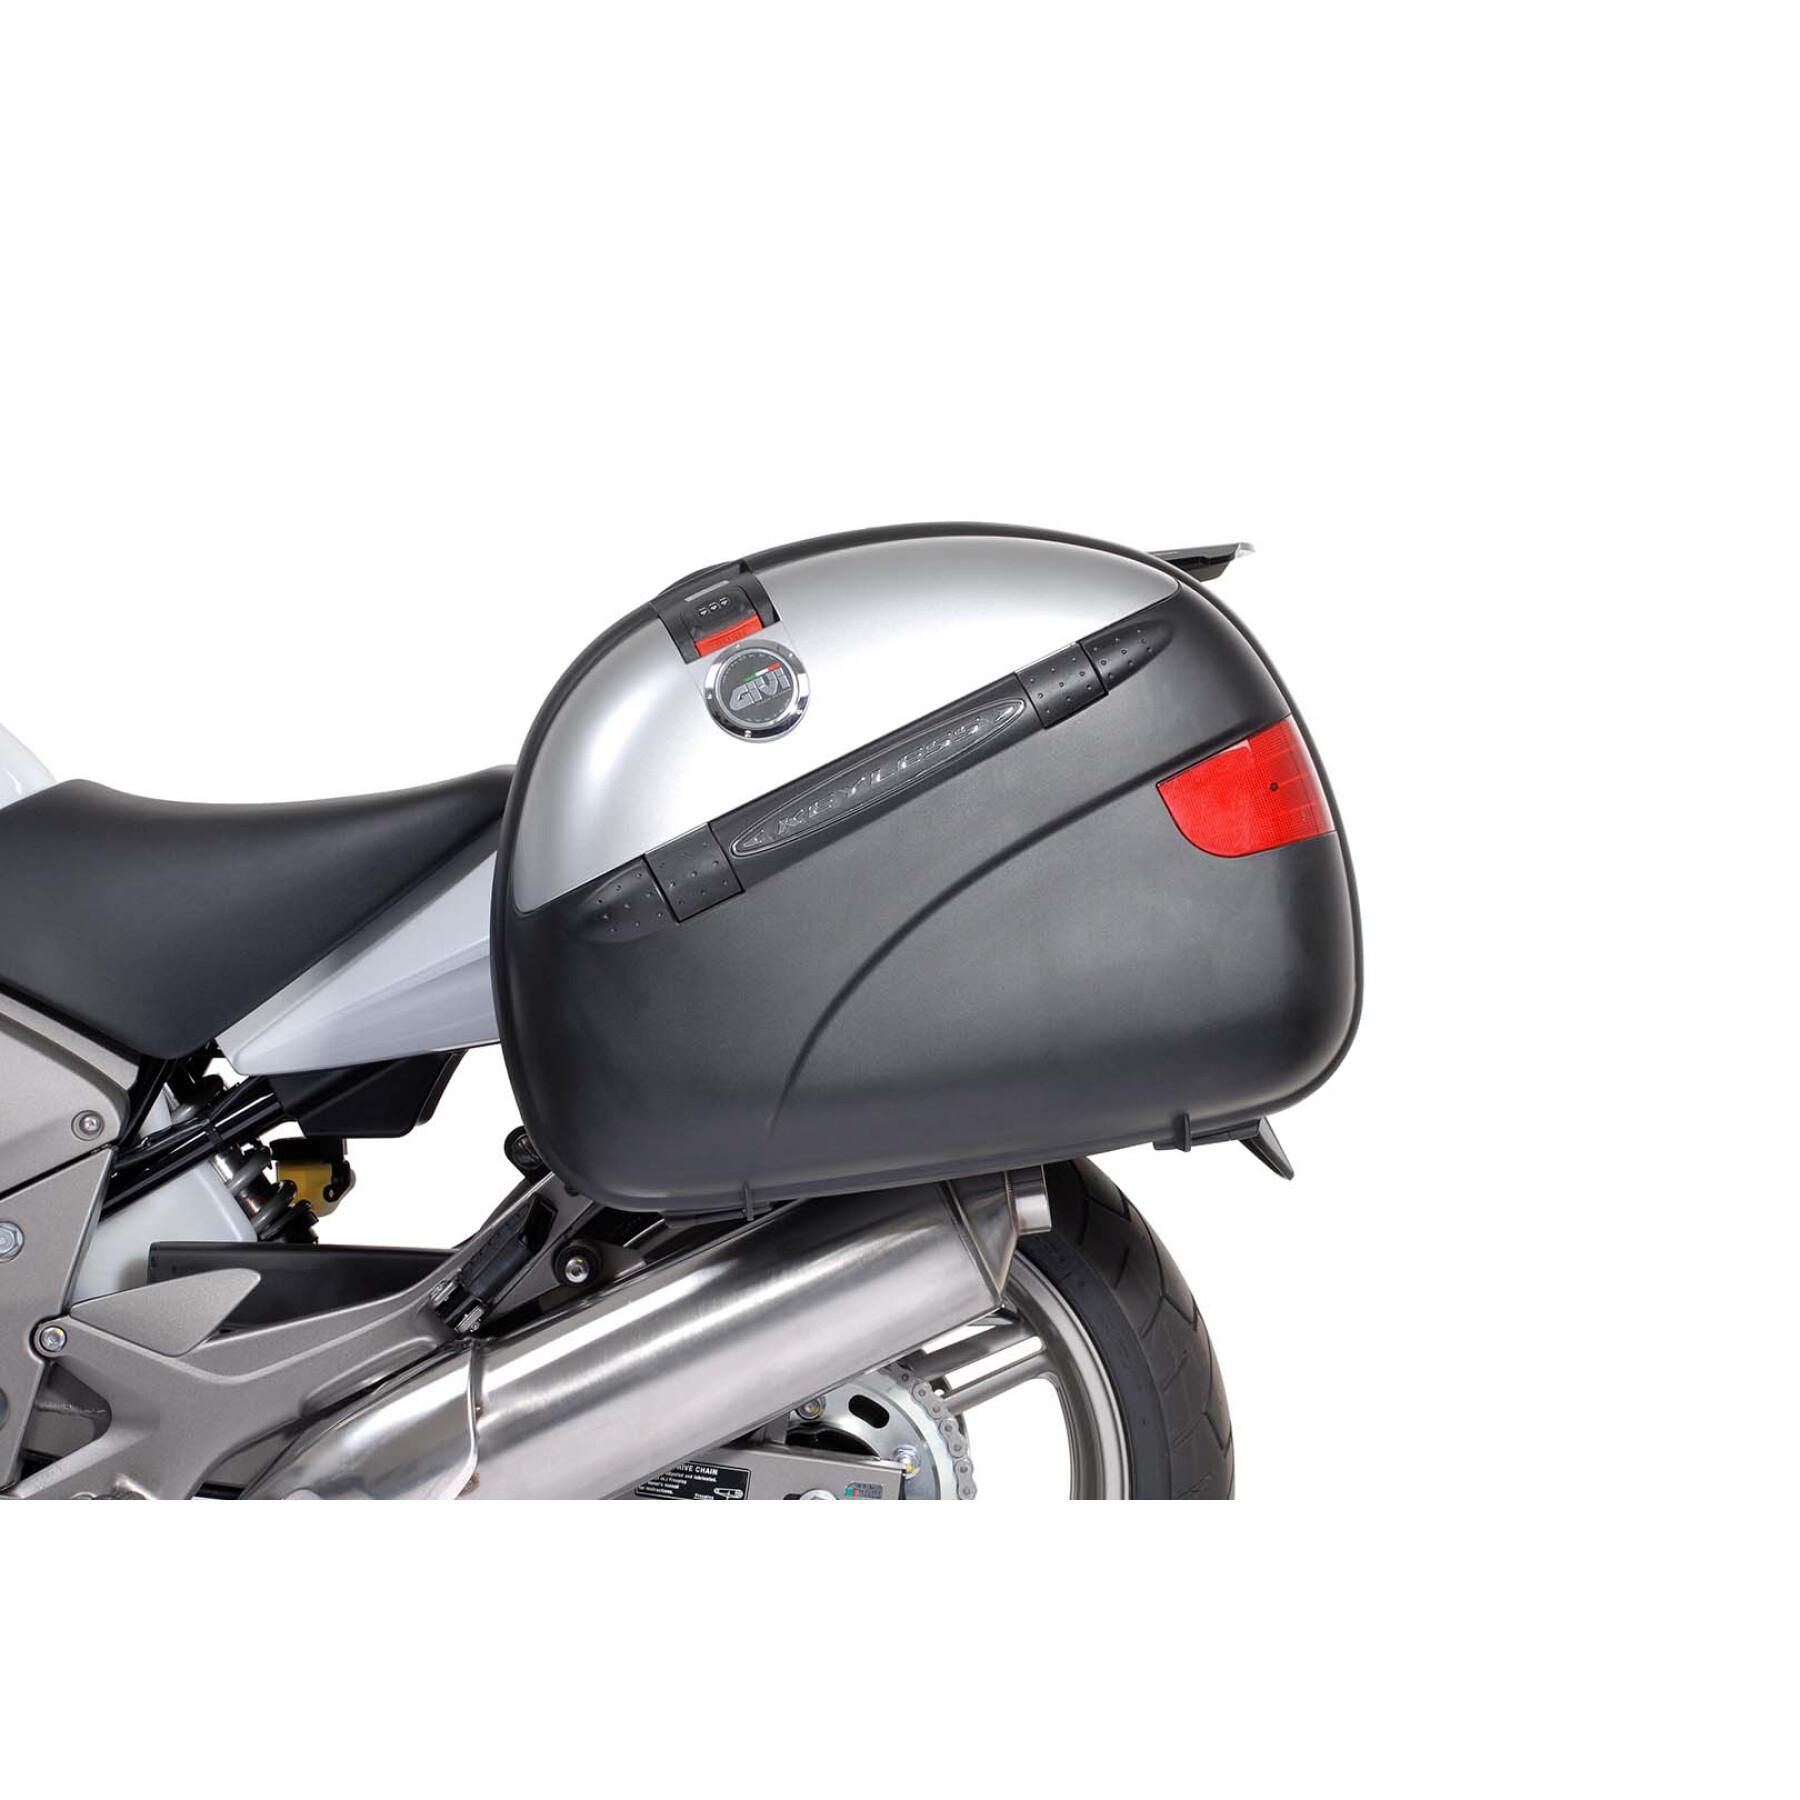 Support valises latérales moto Sw-Motech Evo. Honda Cbf 600